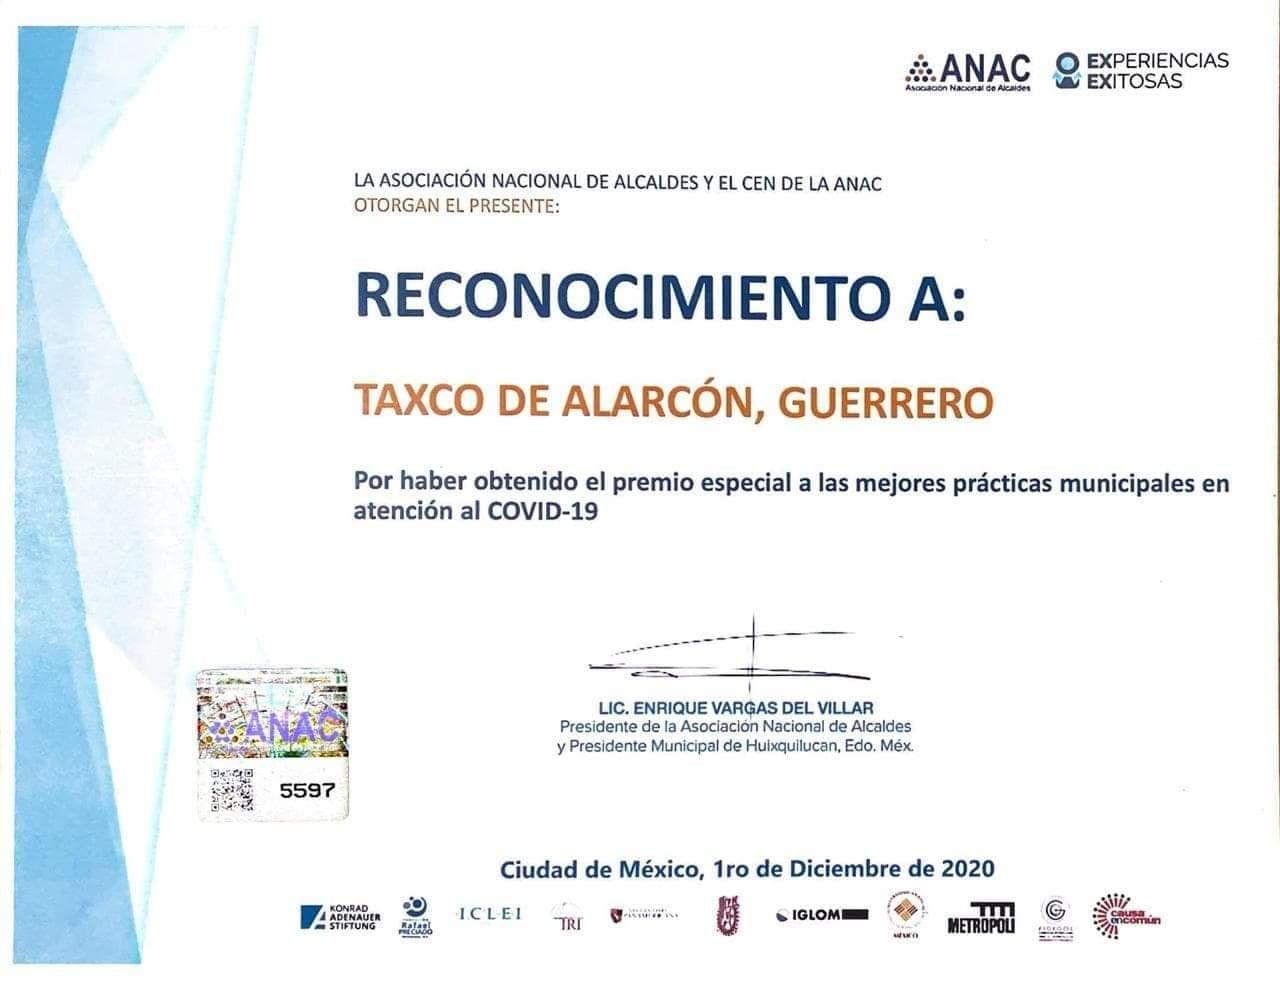 La Asociación Nacional de Alcaldes otorga al gobierno de Taxco el premio a las mejores prácticas municipales en atención al Covid-19. 